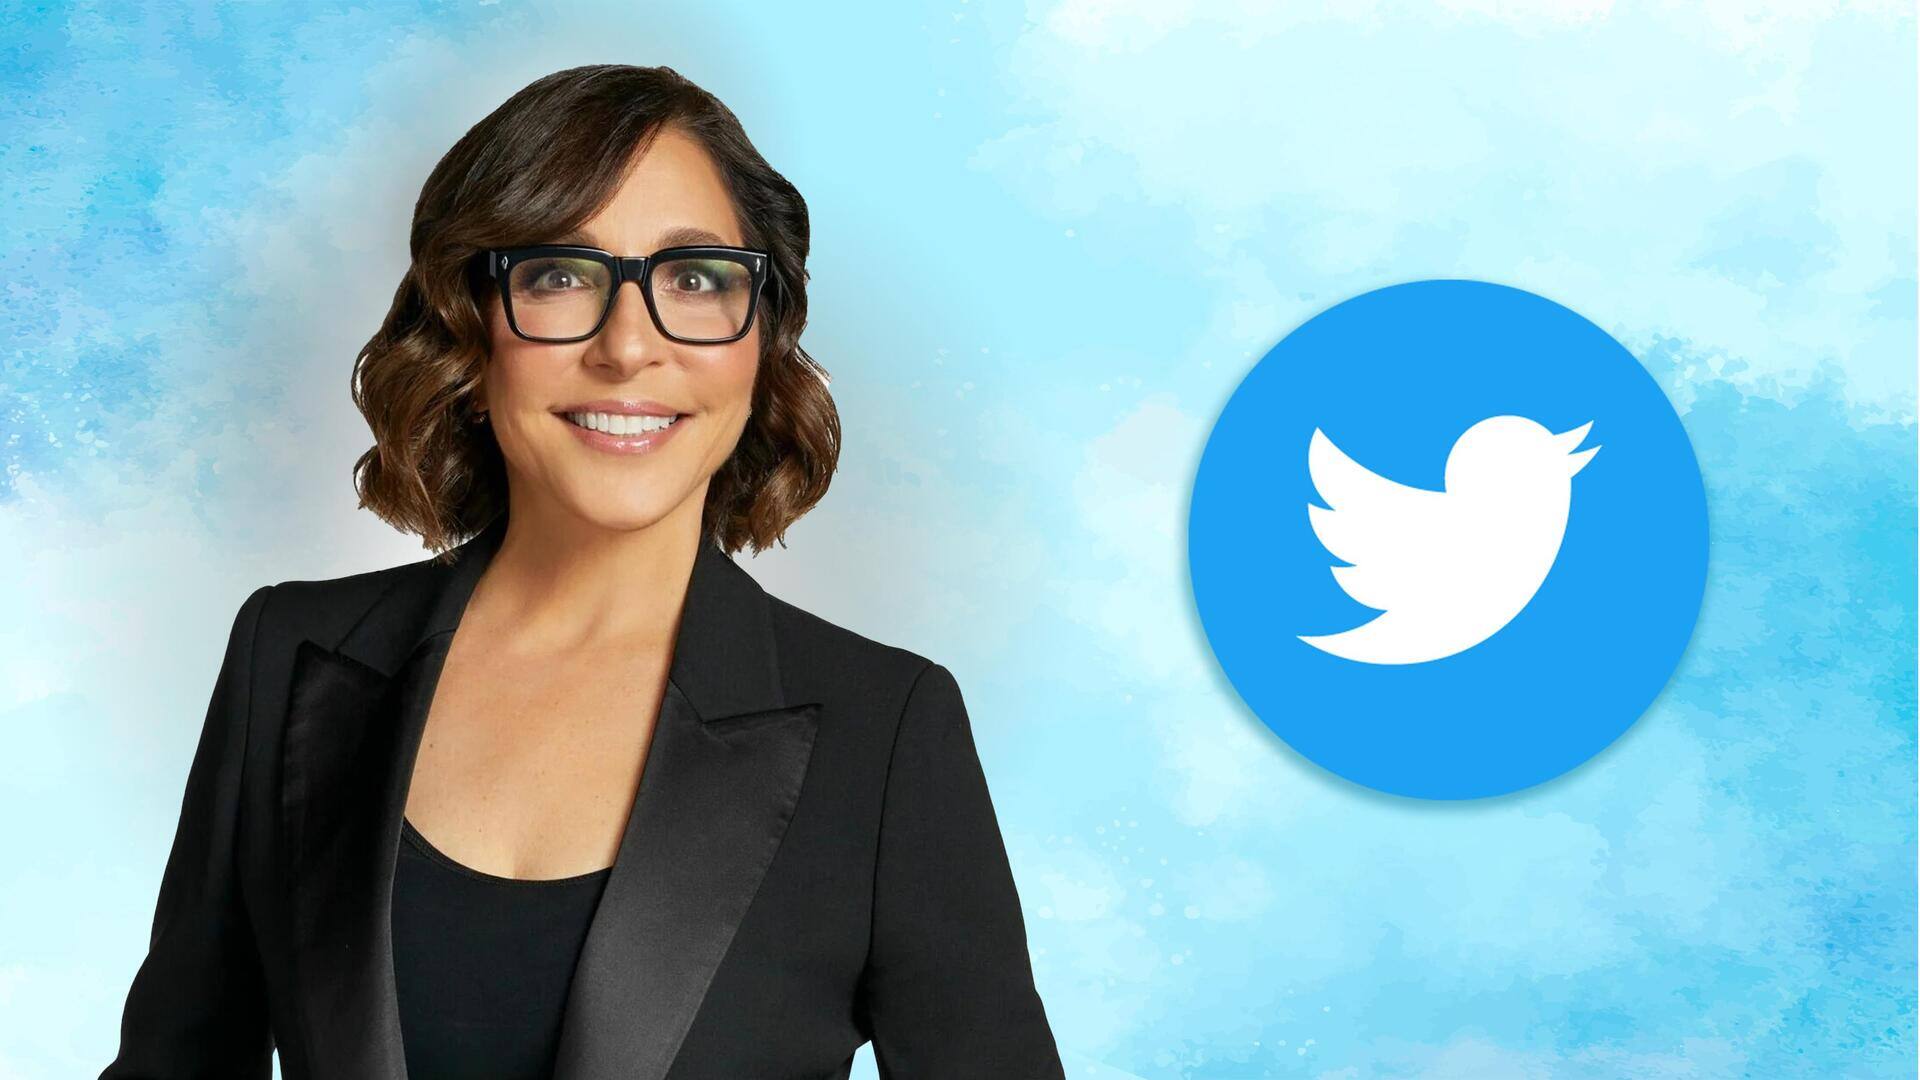 कौन हैं लिंडा याकारिनो, जो बन सकती हैं ट्विटर की नई CEO?